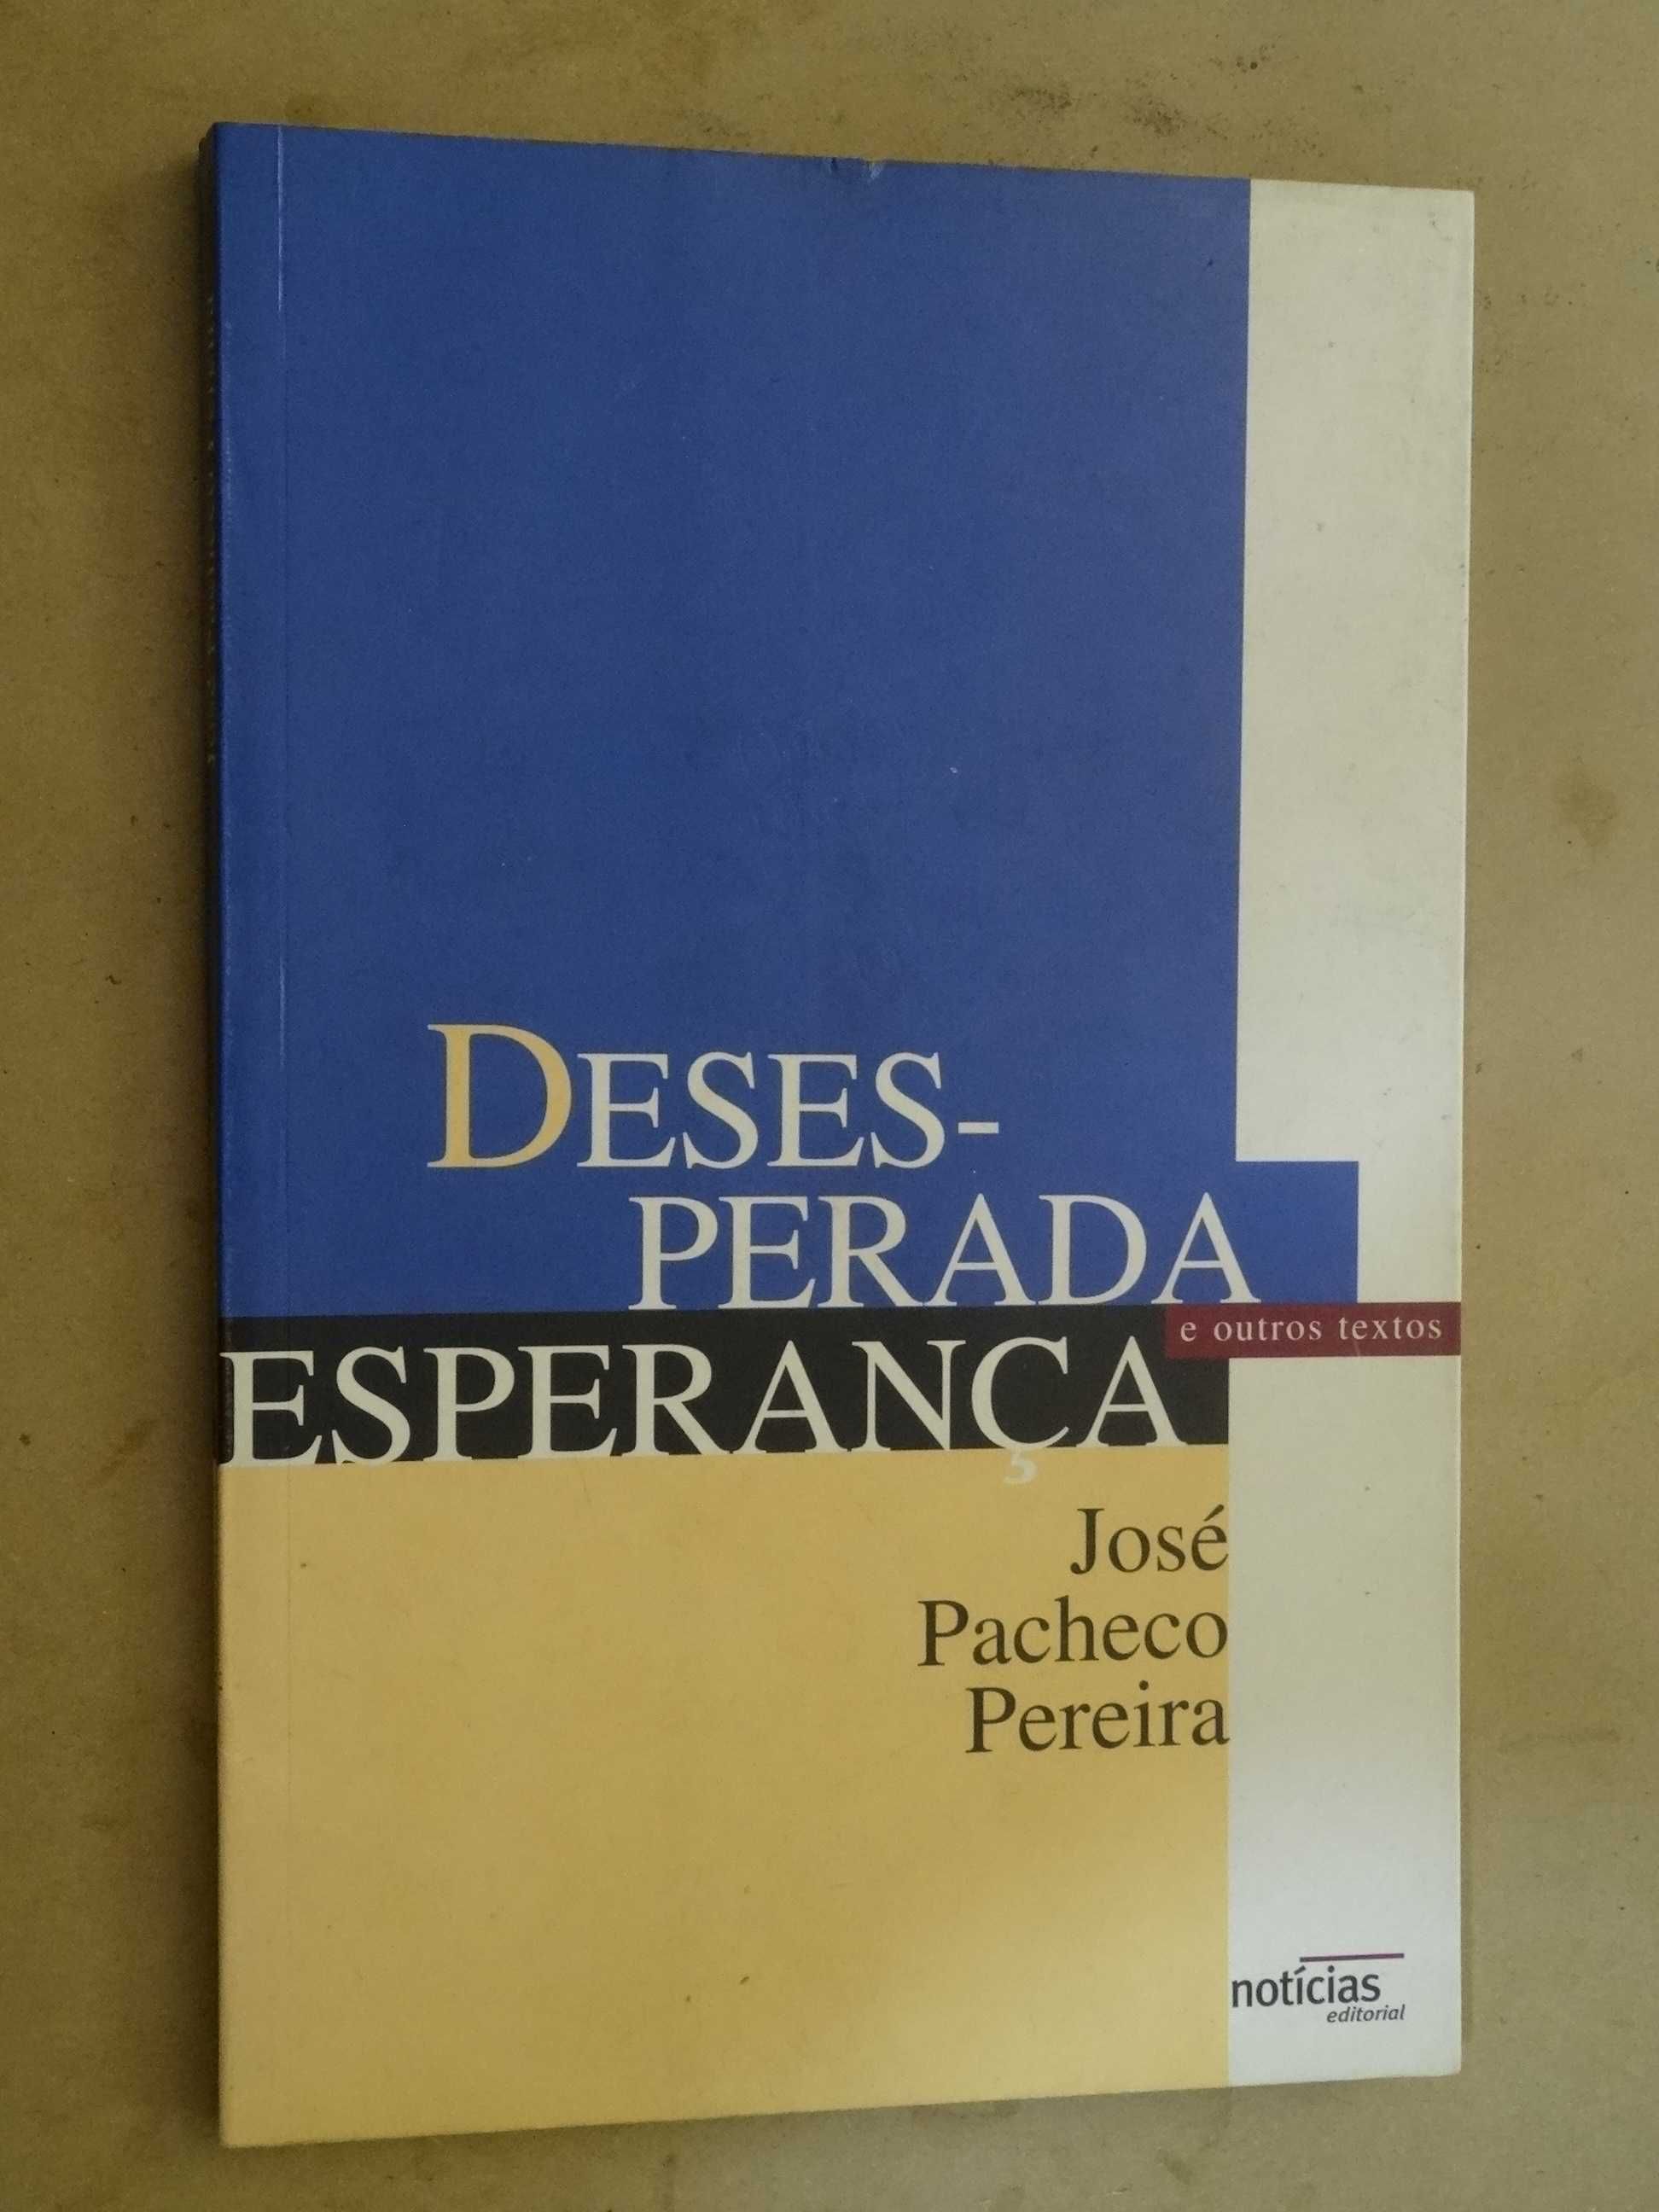 Desesperada Esperança de José Pacheco Pereira